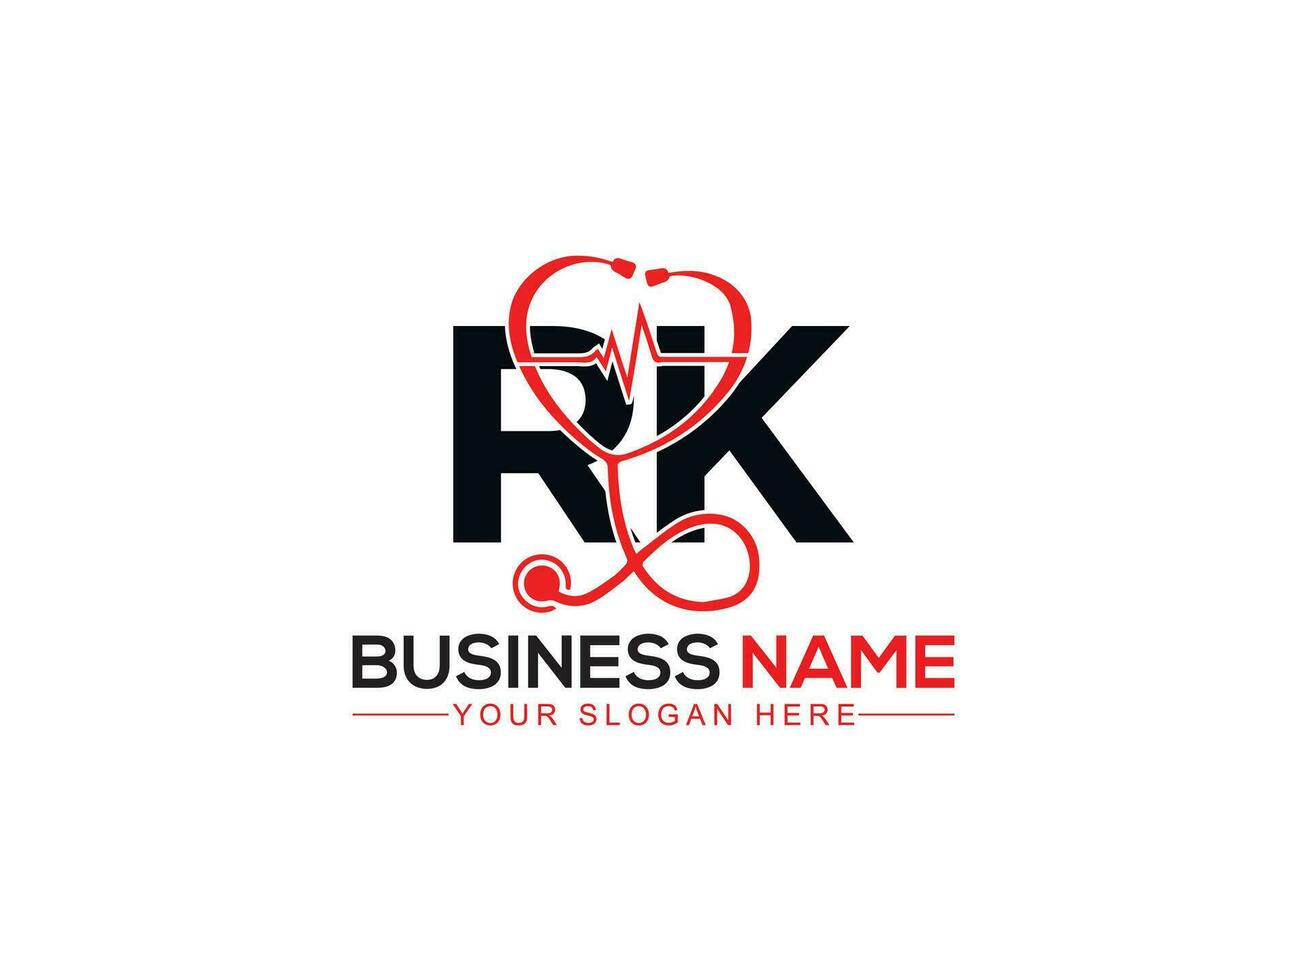 monograma diagnóstico rk logo icono, minimalista rk doctores logo letra diseño vector